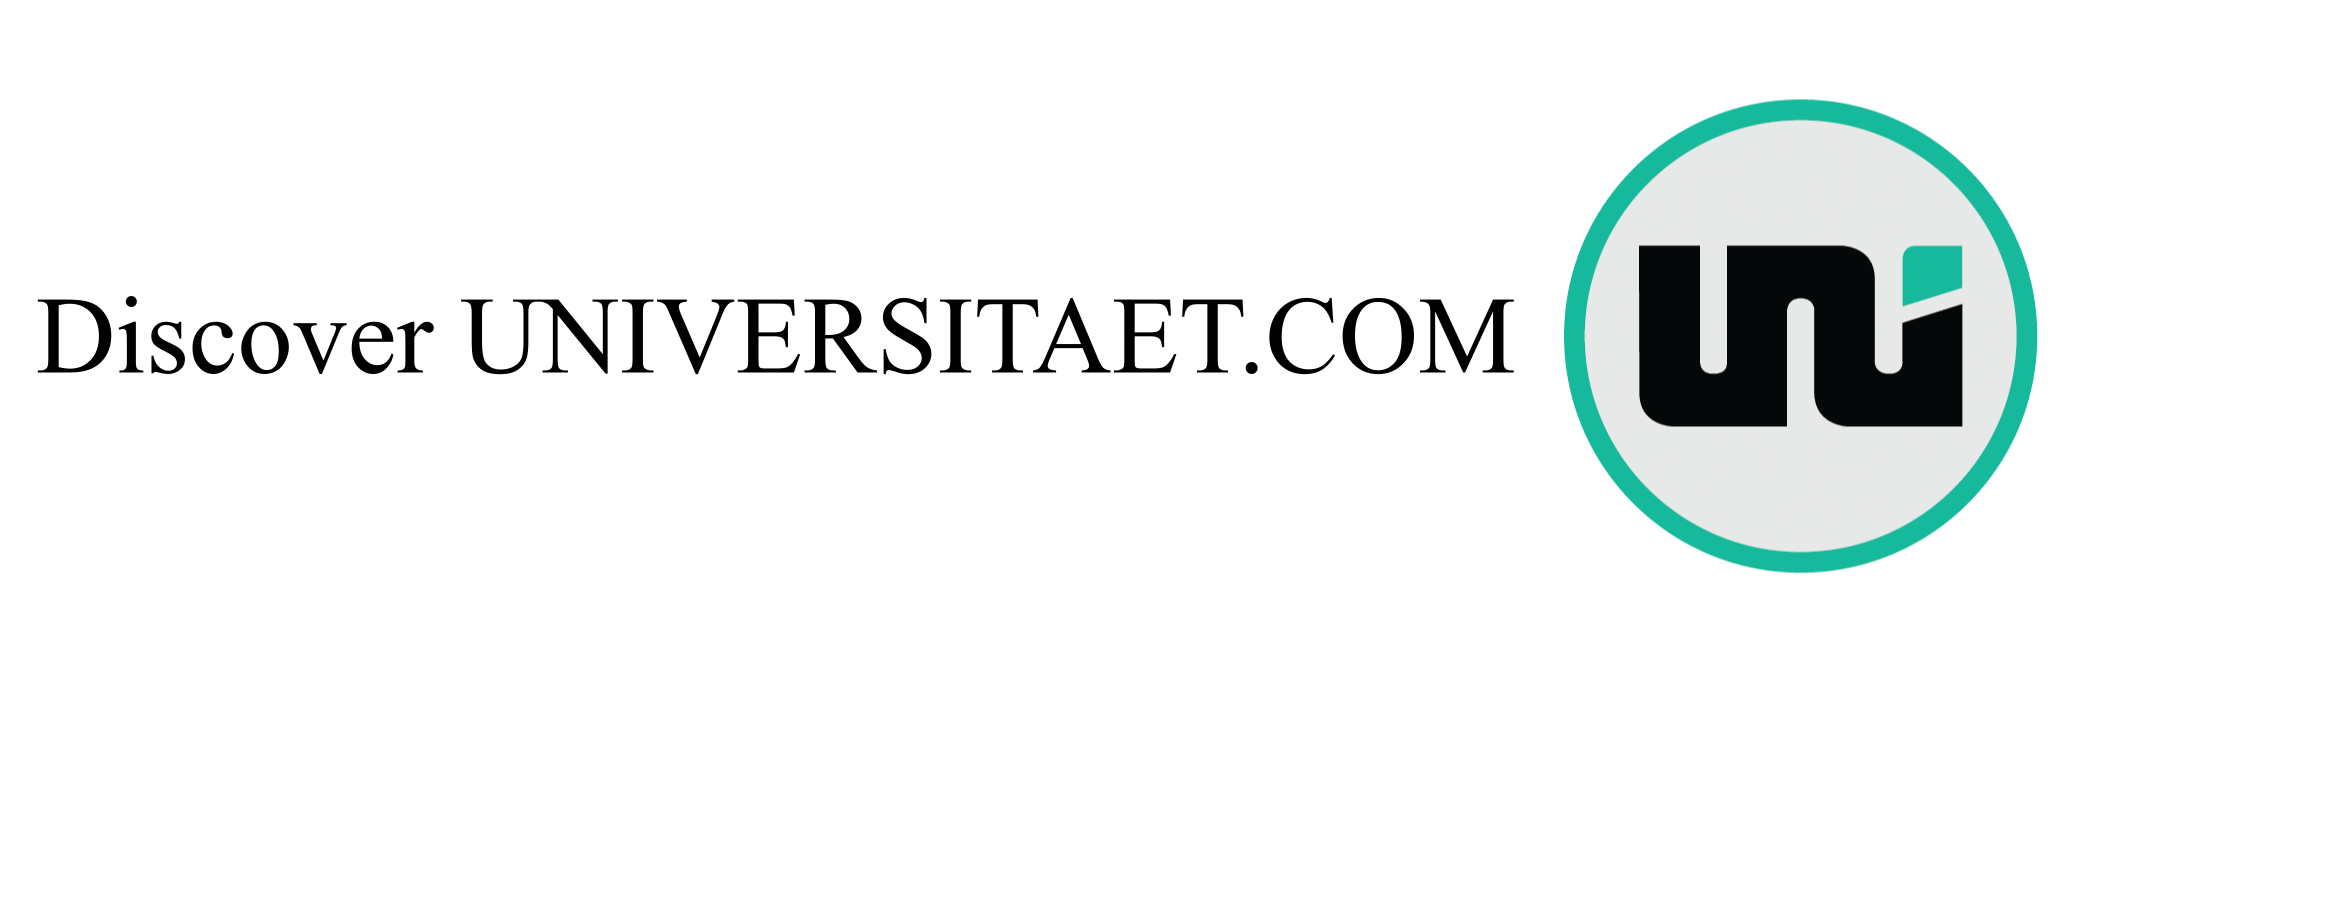 Discover universitaet.com portal!